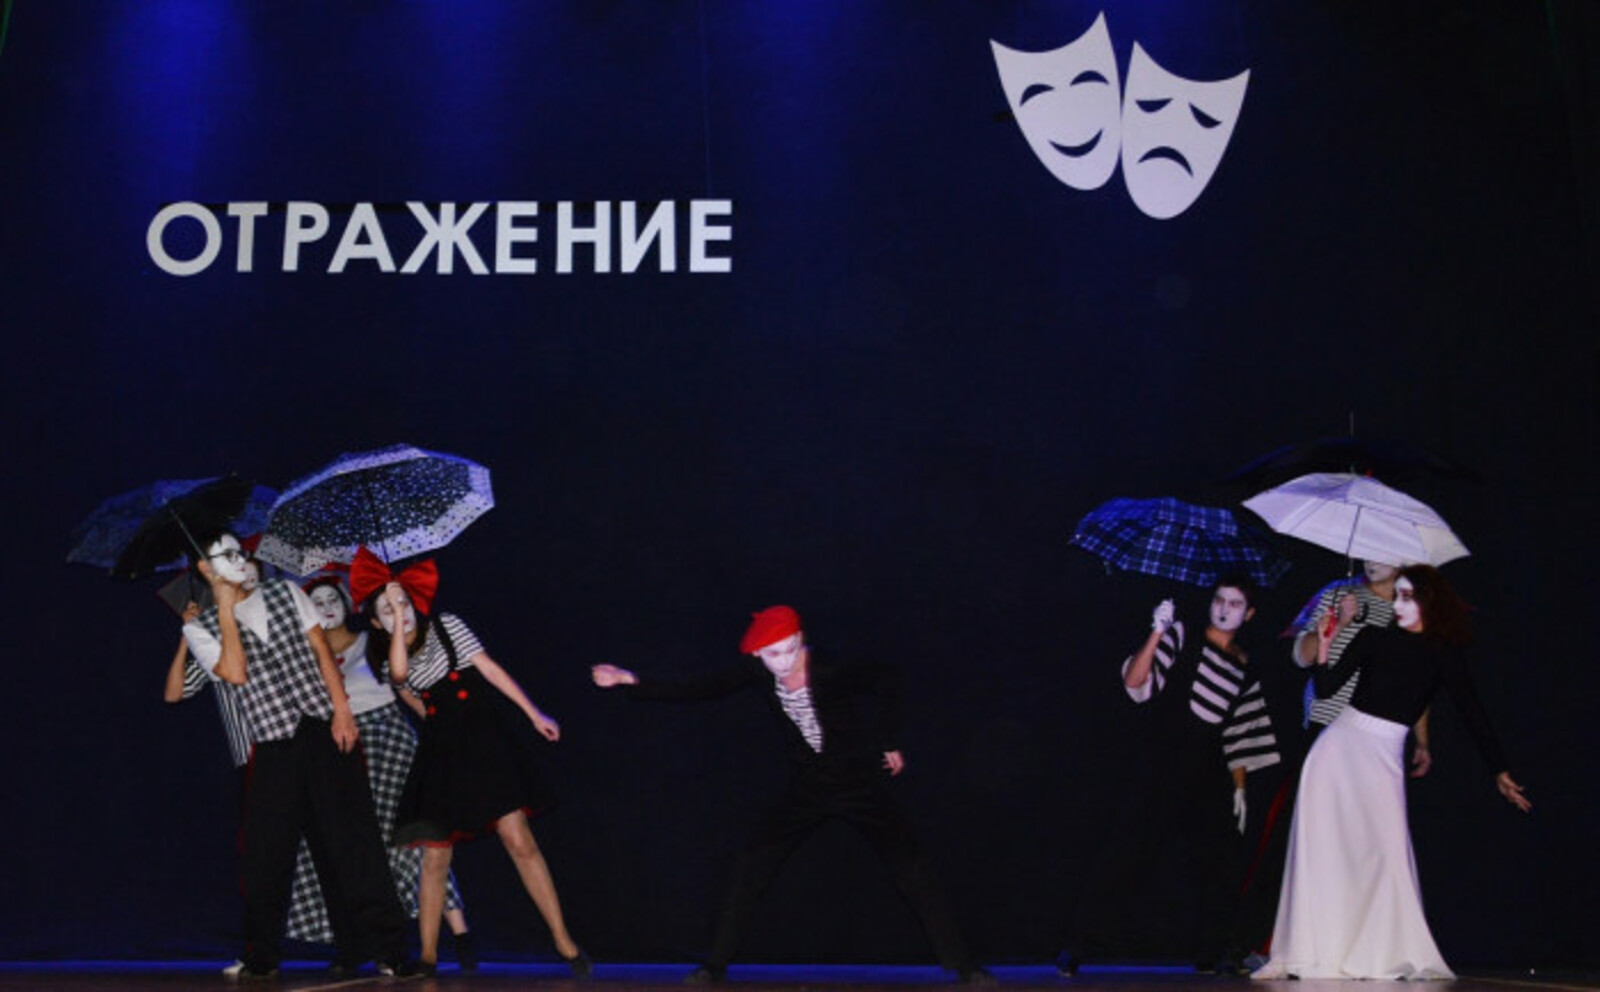 В Башкирии пройдет Межрегиональный фестиваль-конкурс эстрадных жанров театрального искусства "Отражение"